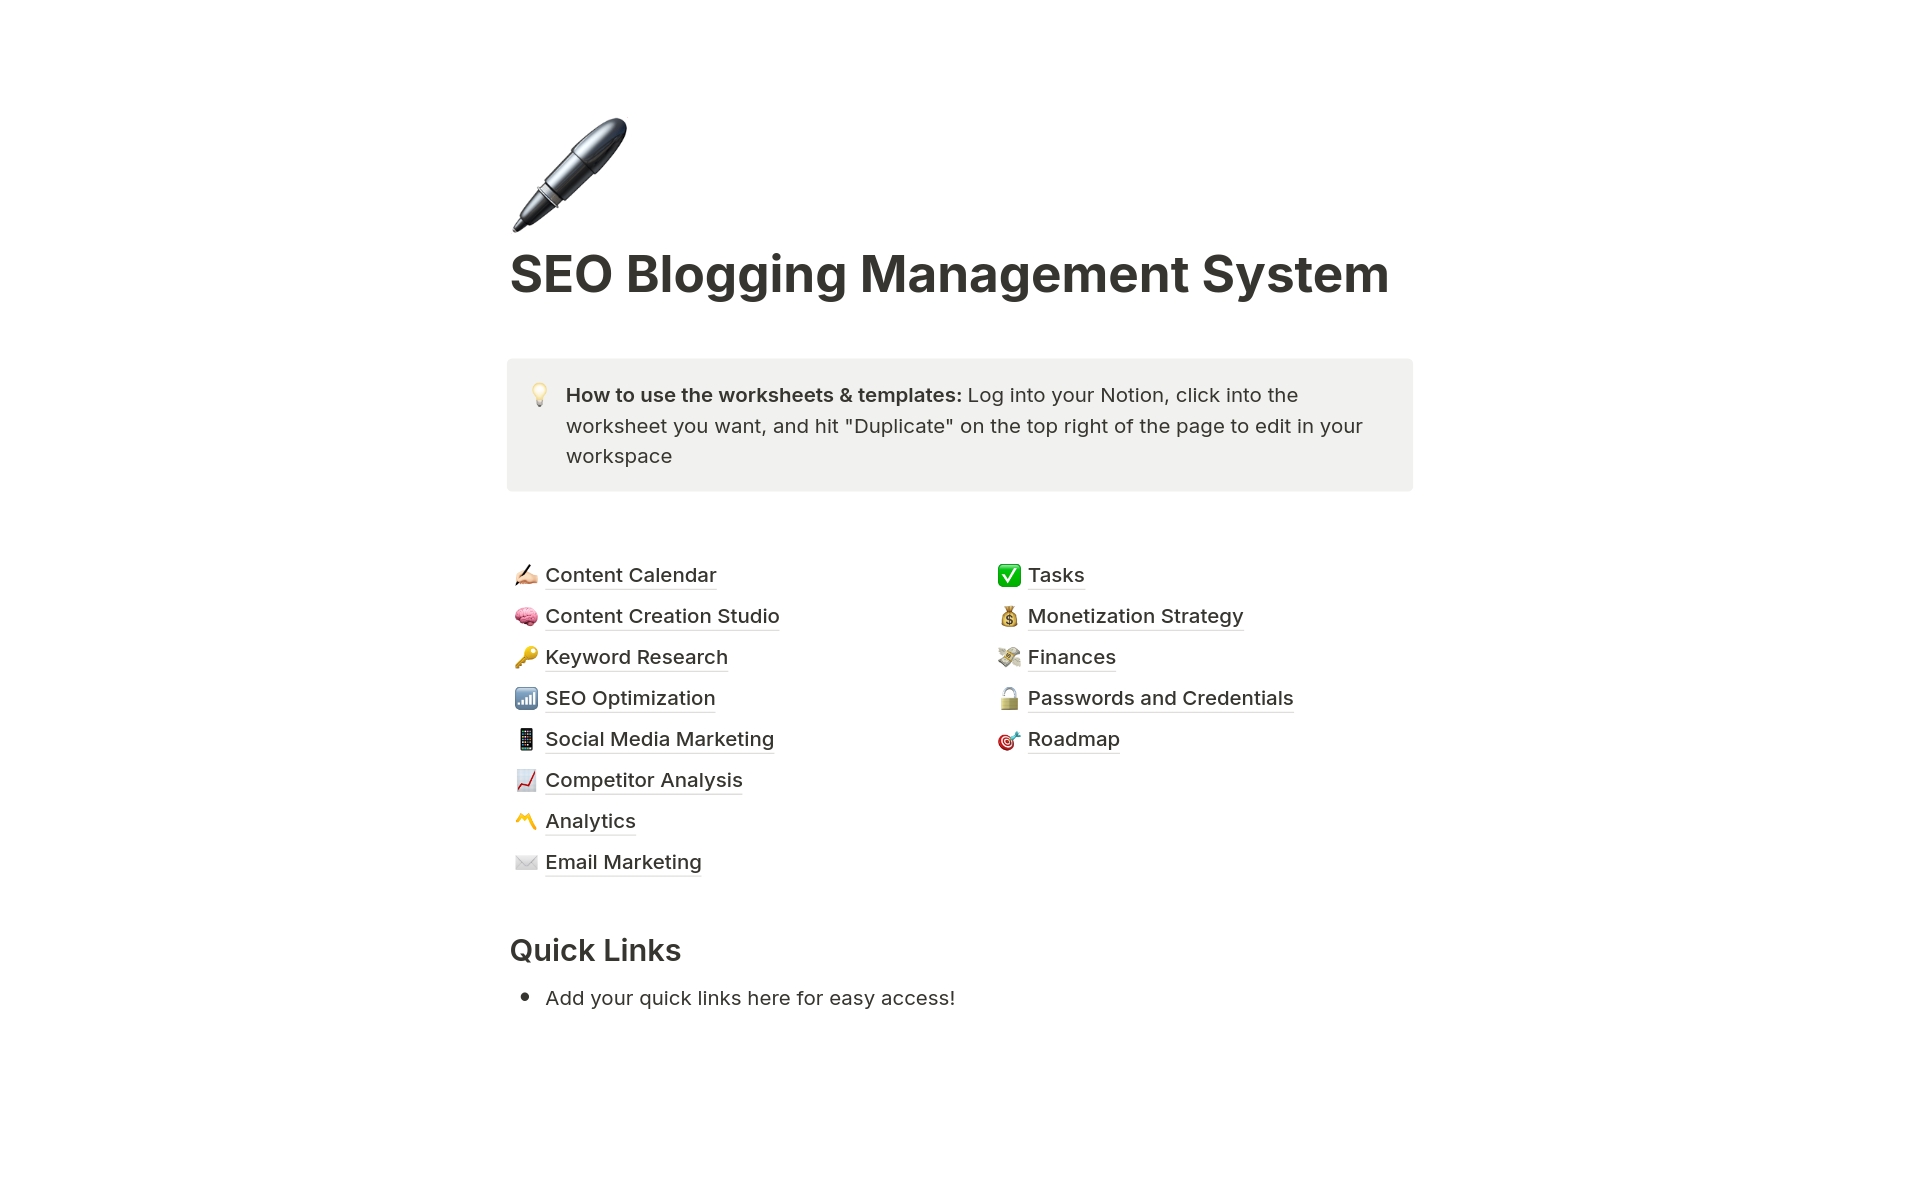 Aperçu du modèle de SEO Blogging Management System